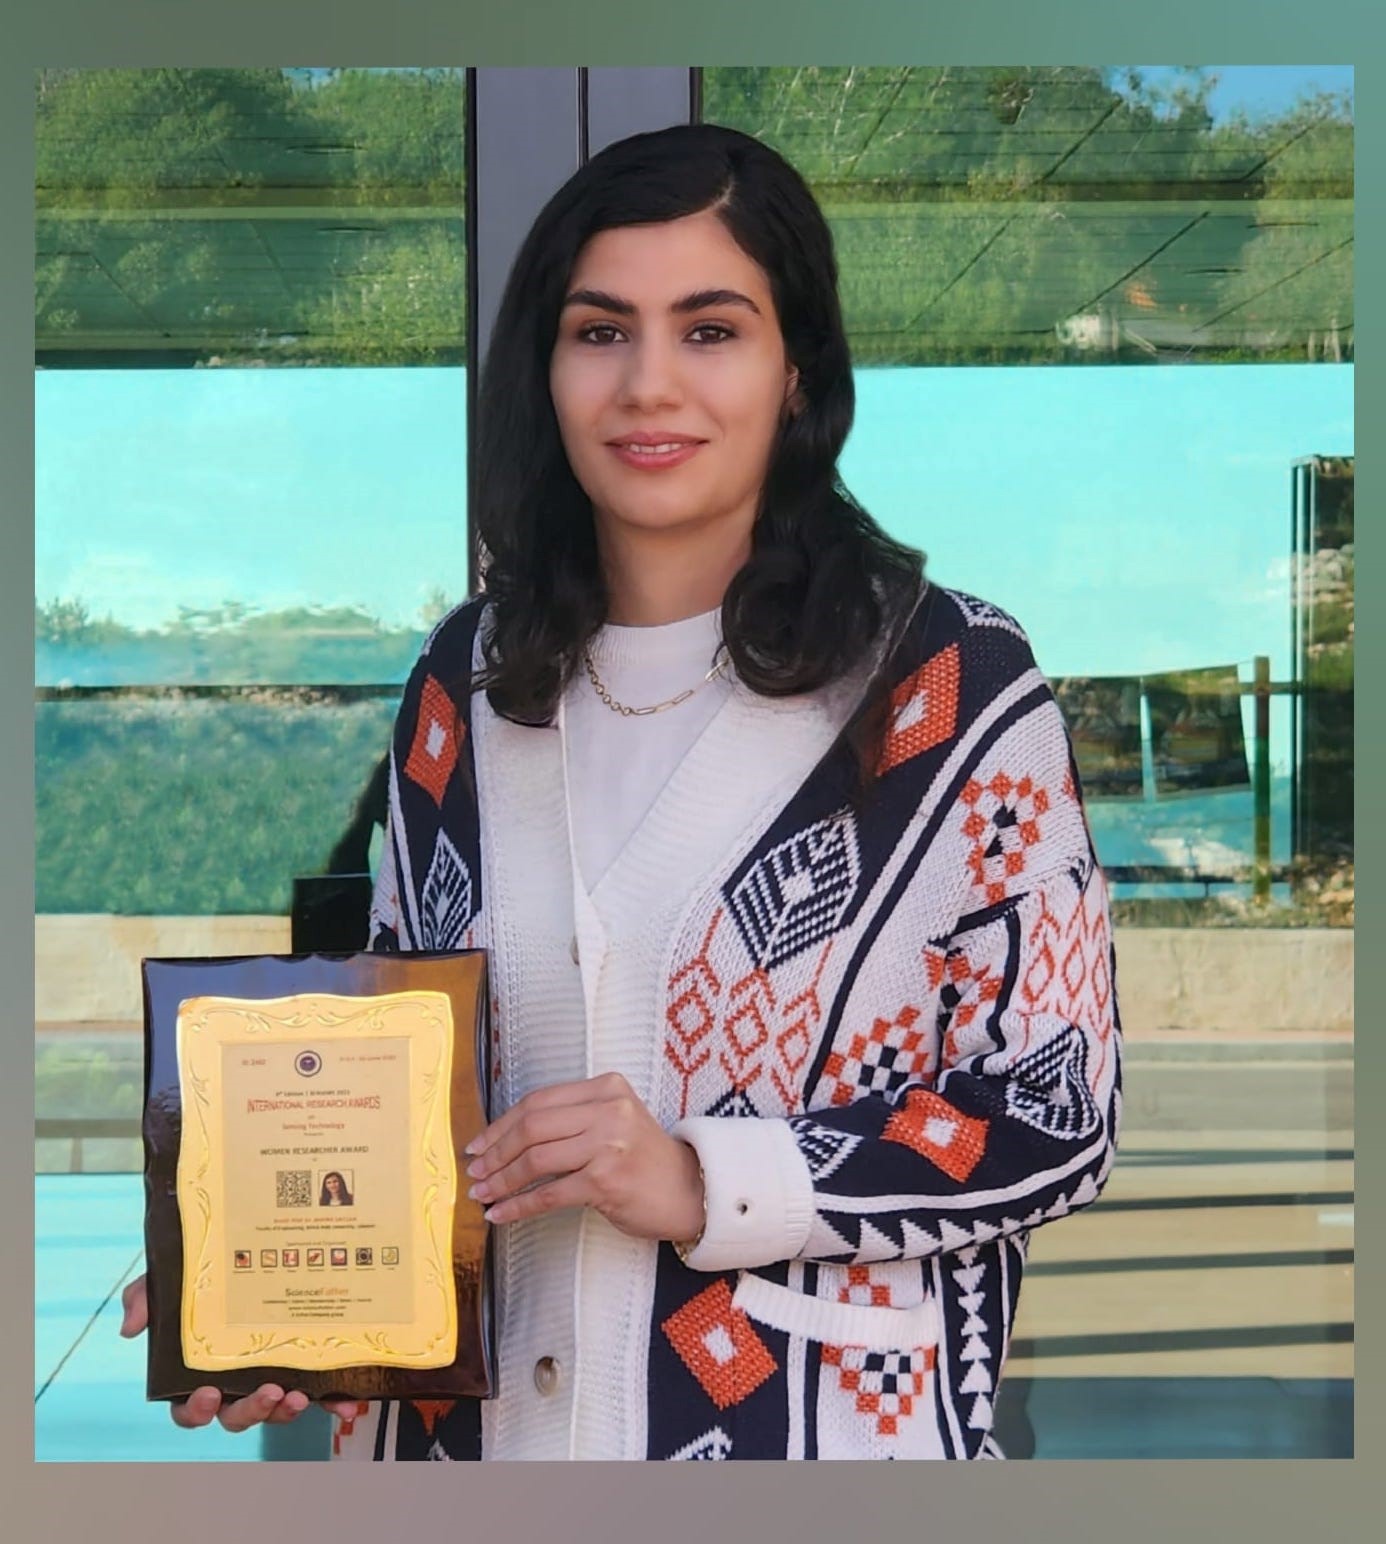 جائزة “المرأة في الأبحاث” للدكتورة أميرة الزيلع من جامعة بيروت العربية